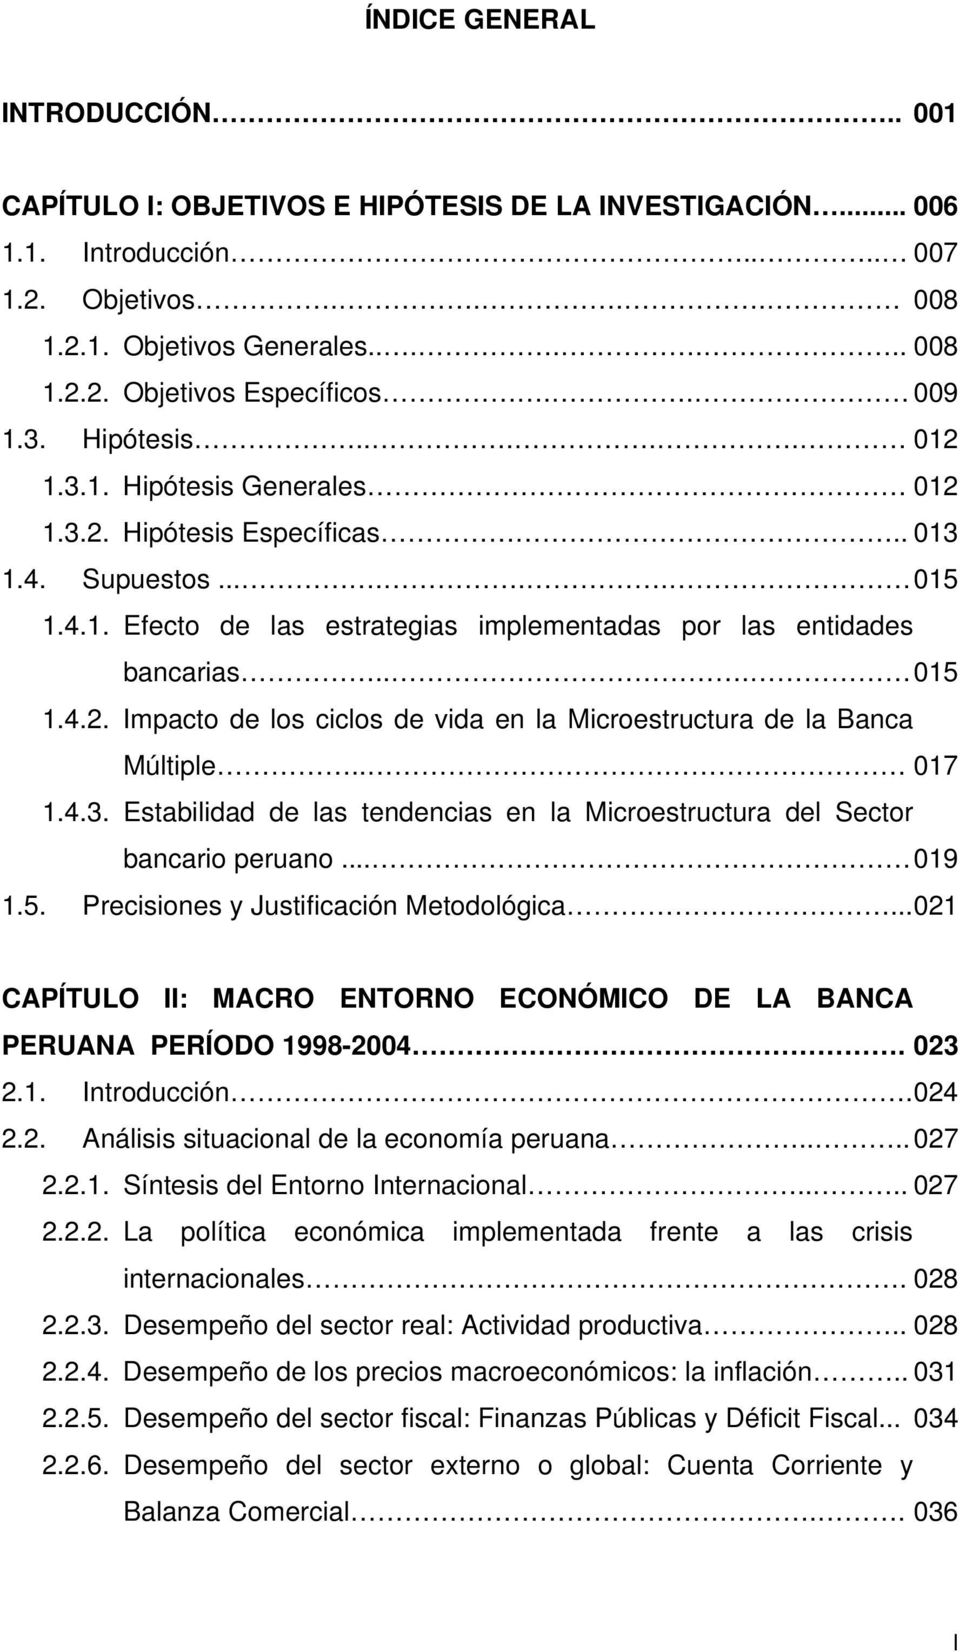 .. 015 1.4.2. Impacto de los ciclos de vida en la Microestructura de la Banca Múltiple.. 017 1.4.3. Estabilidad de las tendencias en la Microestructura del Sector bancario peruano... 019 1.5. Precisiones y Justificación Metodológica.